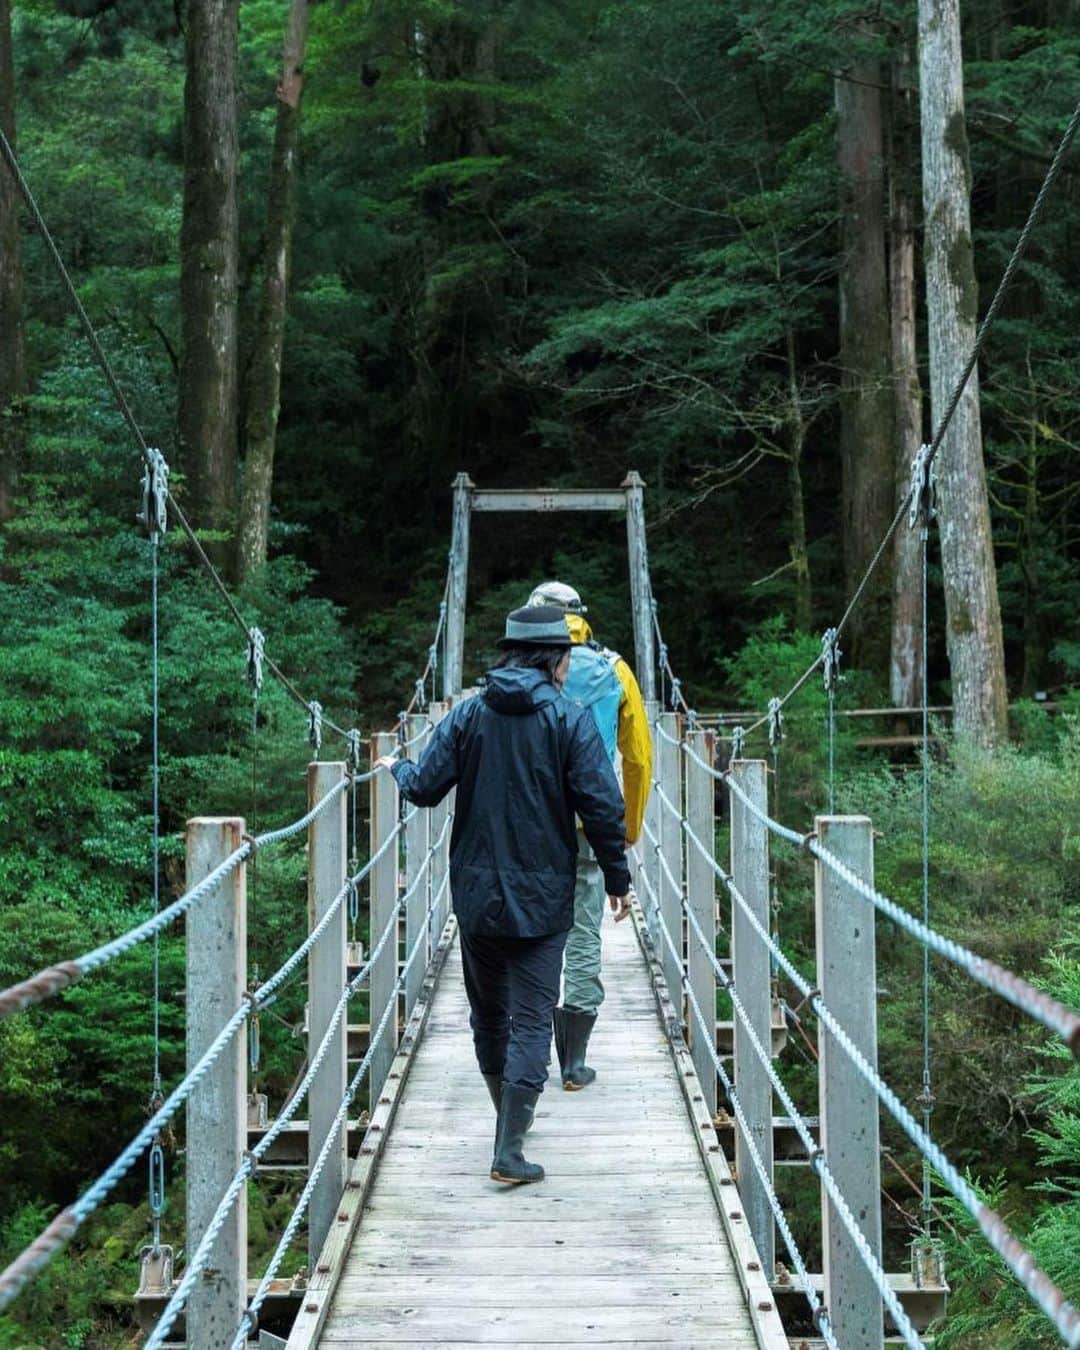 川上俊のインスタグラム：「Research & Interview travel : learning sustainability at yakushima japan for curiosity magazine (by @r100_tokyo )  #屋久島  以前から屋久島の自然環境や循環についてを学び感じるために行ってみたいと想っていた場所。苔むす森に降る大量の雨が水の循環を生み、生命の息吹と太古の自然を残す世界遺産の島・屋久島。そして、その屋久島にある実験的宿泊施設「Sumu Yakushima」。  沖縄での滞在の後、飛行機を乗り継いで屋久島／Sumu へ。  発案者で設計者の小野 司さん、同じく発案者で島の自然や営みをレクチャーしている今村祐樹さんを訪れ、自然と対話する方法や価値観についてを教わった。そんな印象と記憶が残っています。  ー  Learning the Cycle of Life in Yakushima 「屋久島で命の循環を学ぶ」 |  Curiosity   R100 tokyoがブランドビジョンに掲げる言葉「Quiddity｜本質的」はどこにあるのか。手がかりを求めて屋久島の自然と時間を体験する旅に出た。  https://r100tokyo.com/curiosity/essence/230502/  #sustainability #travelingjapan」